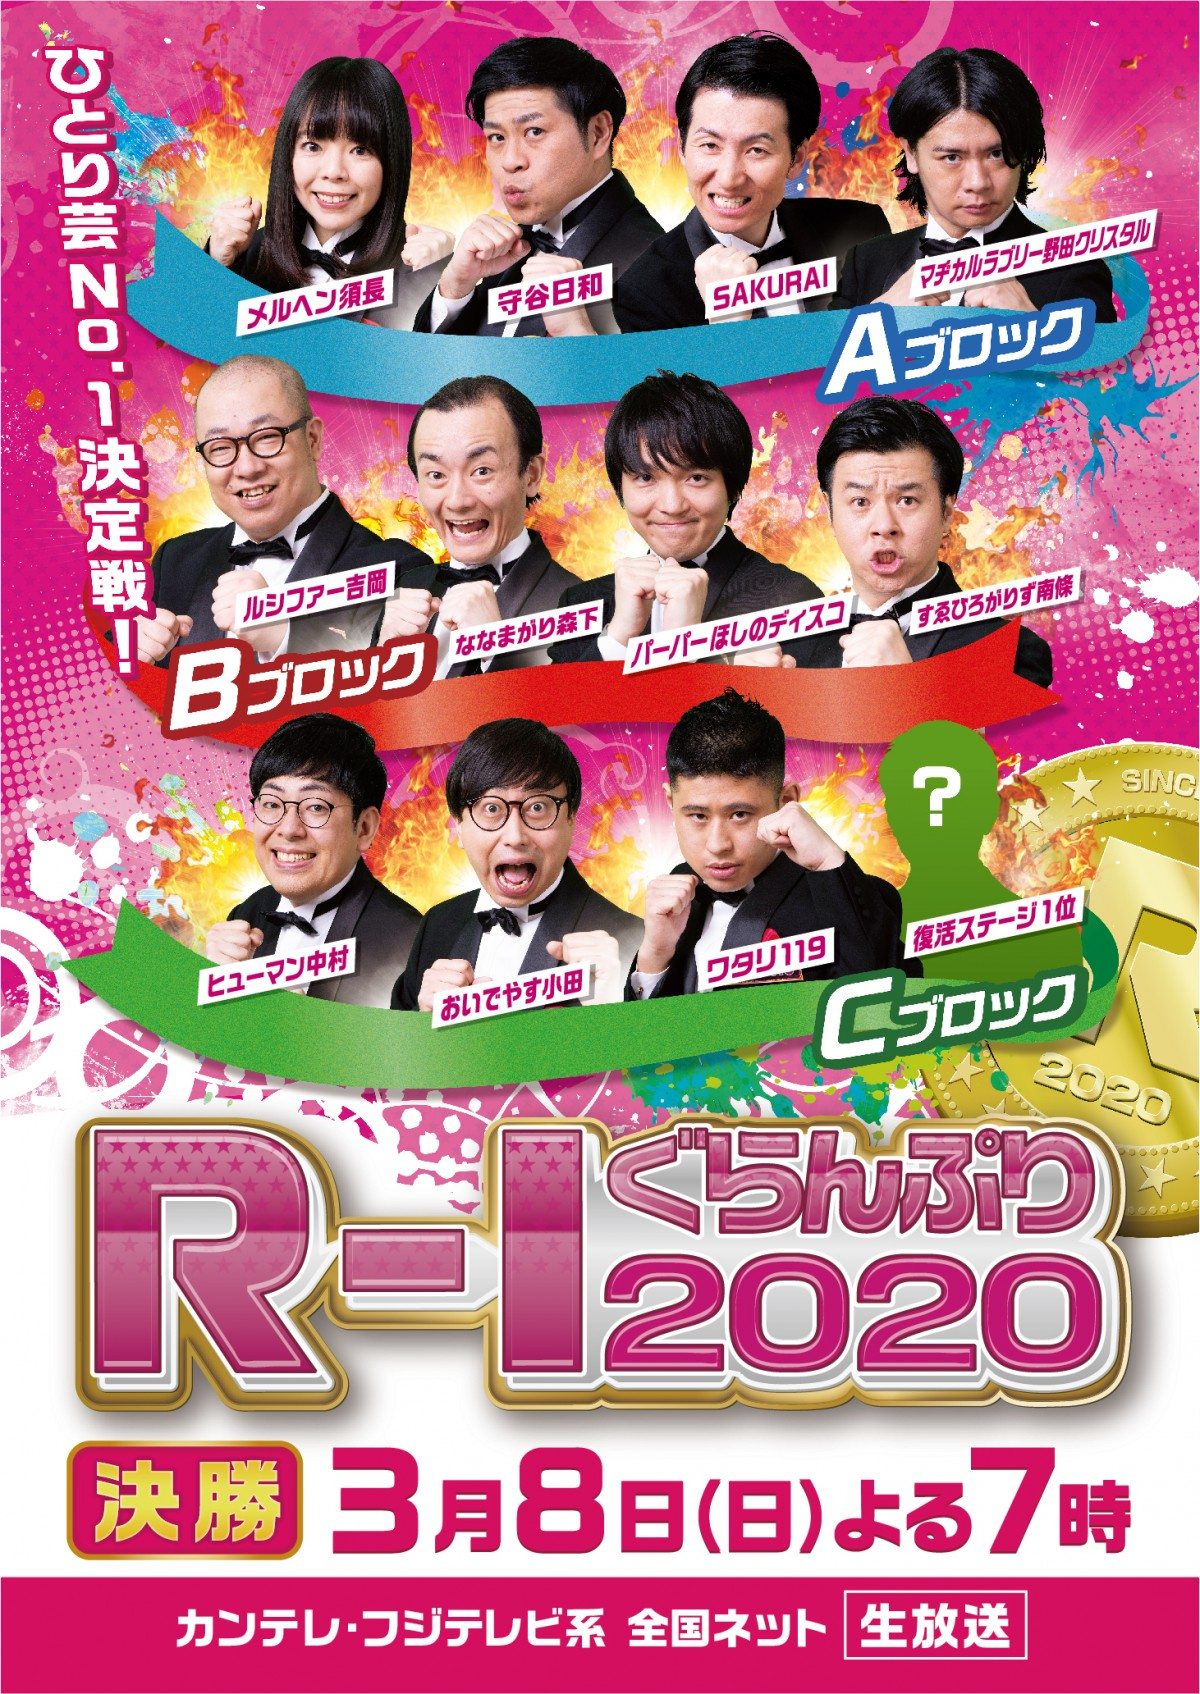 無観客の R 1 決勝 ツイッター投票を初導入 お茶の間で笑って Oricon News